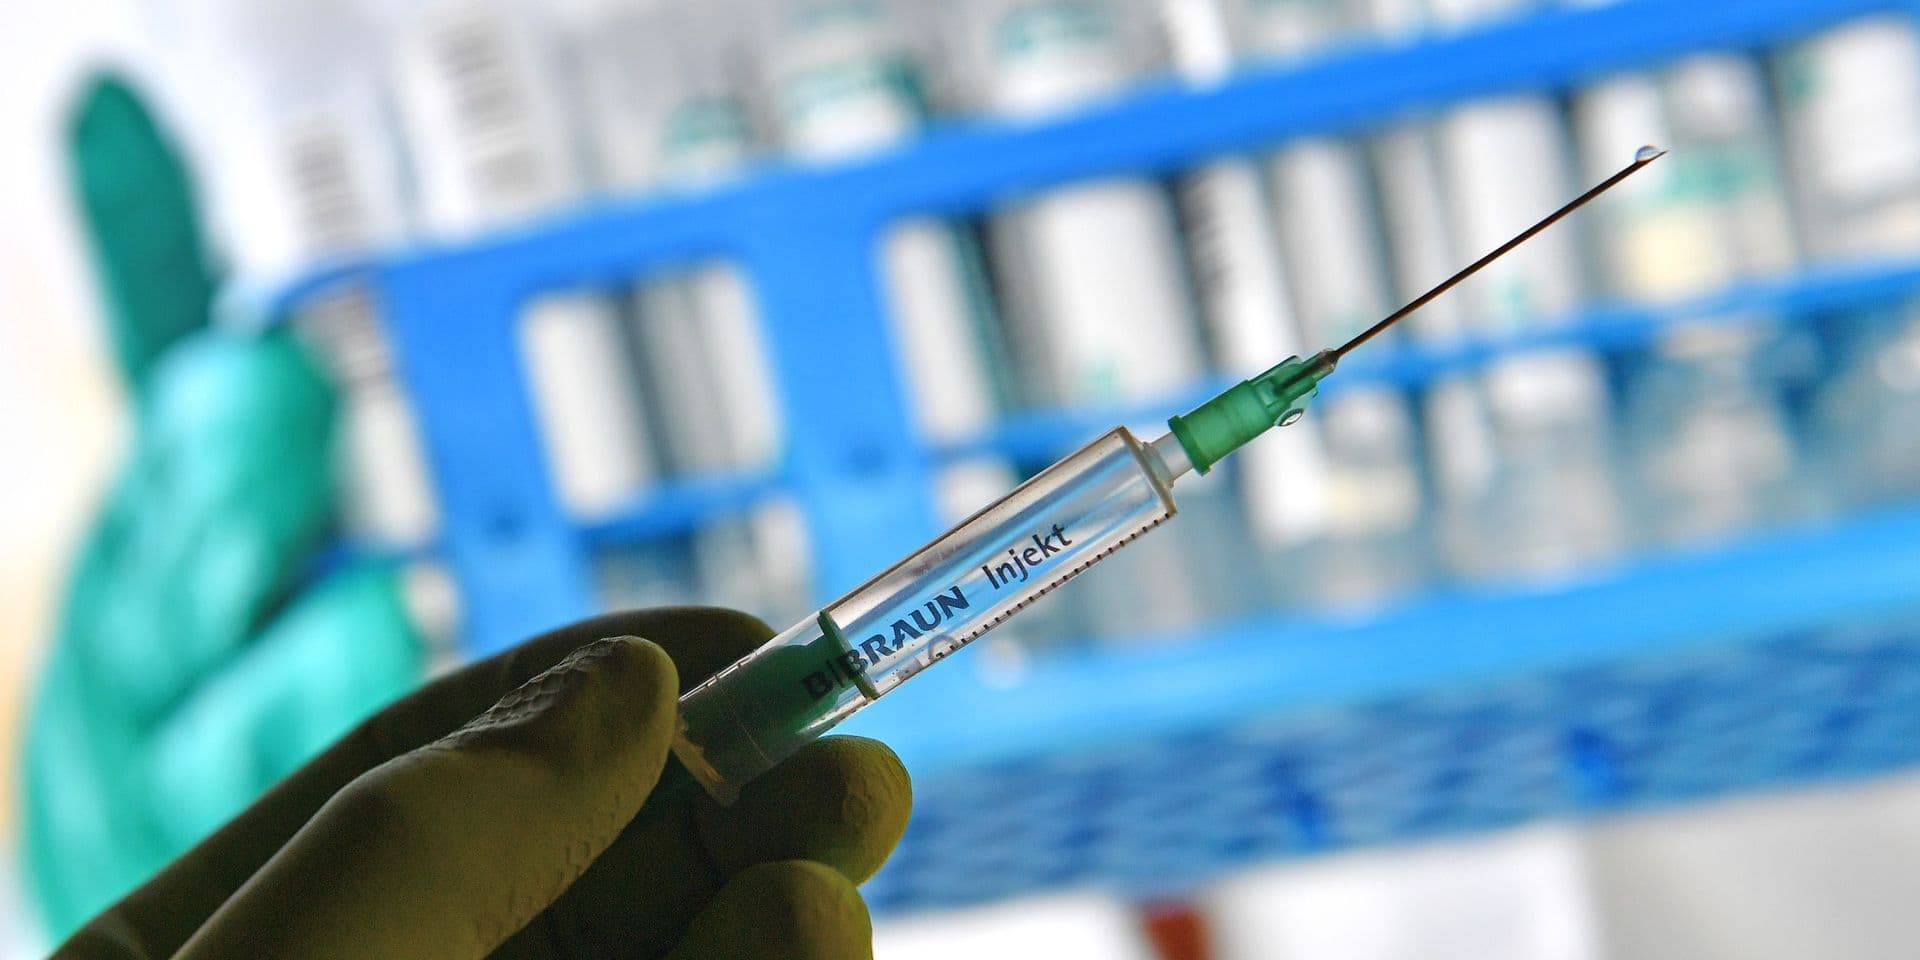 Belgique: Le vaccin contre le coronavirus sera gratuit mais pas obligatoire